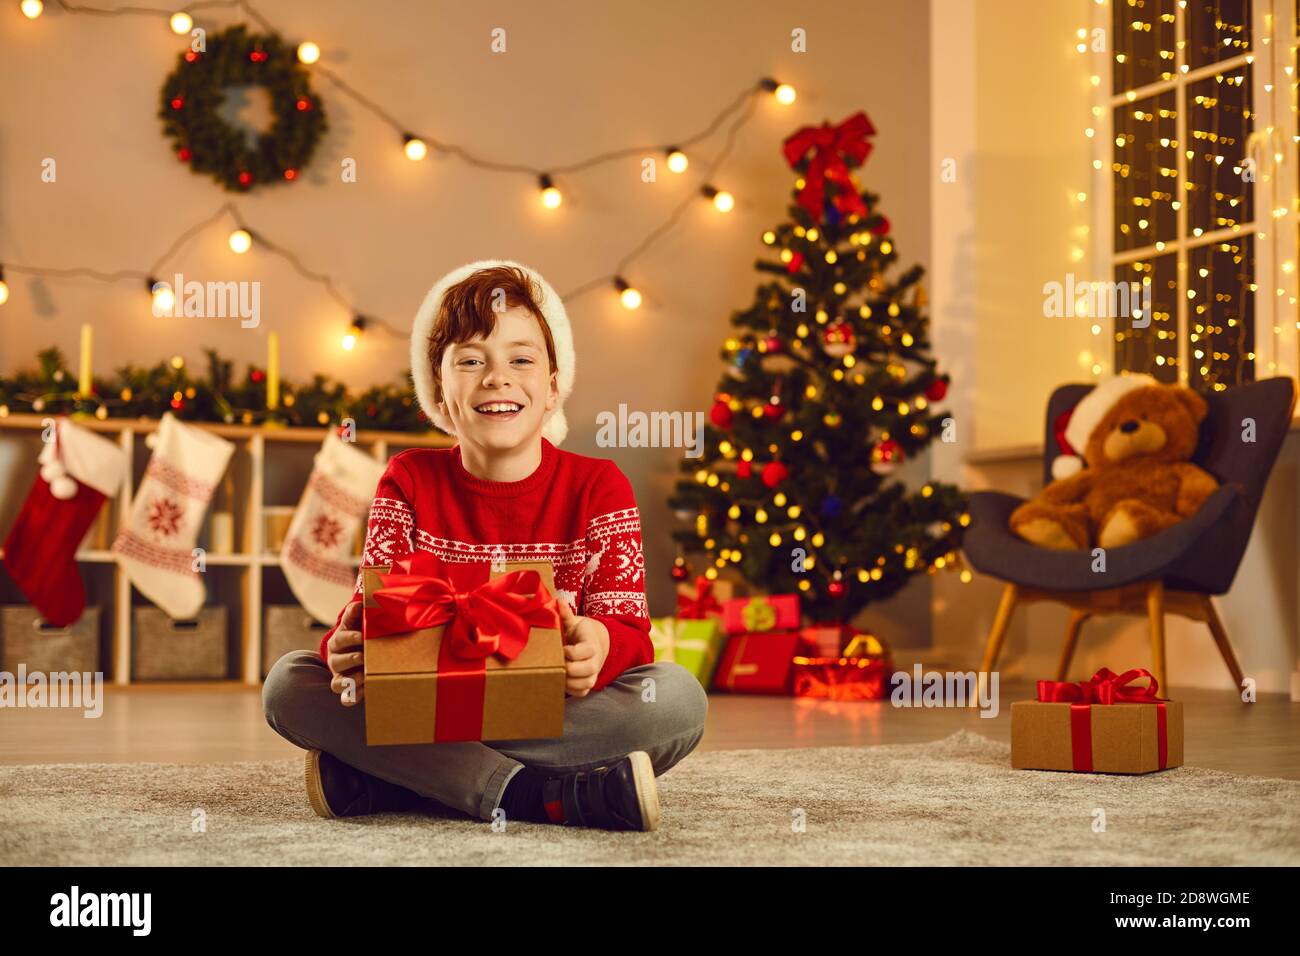 Niño sonriente sentado en el suelo y sosteniendo la caja de regalo Las manos durante la Navidad Foto de stock